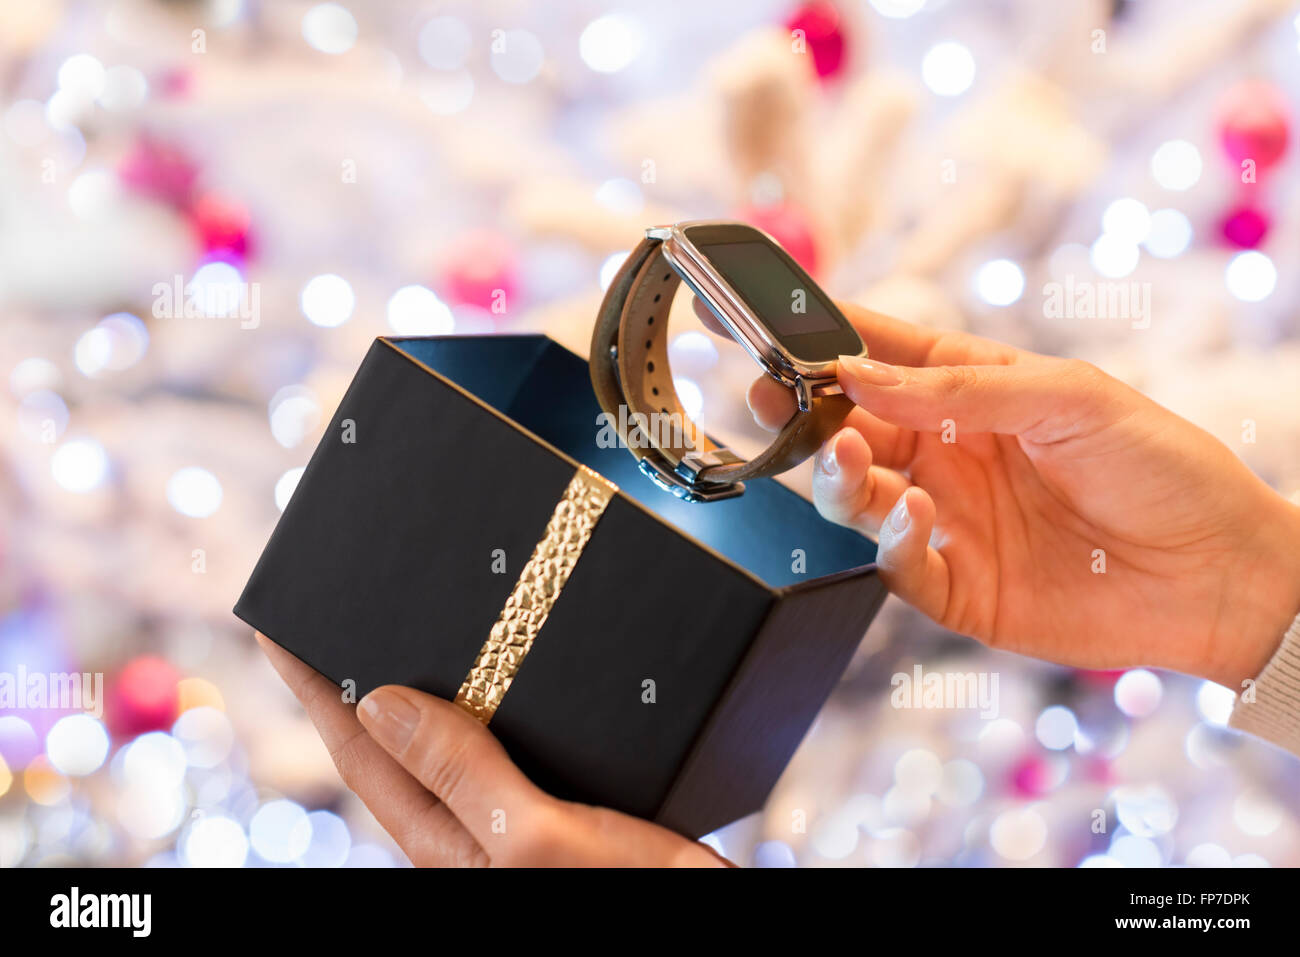 Femme découvre une smartwatch en cadeau de Noël. Arrière-plan de l'arbre de Noël Boke Banque D'Images